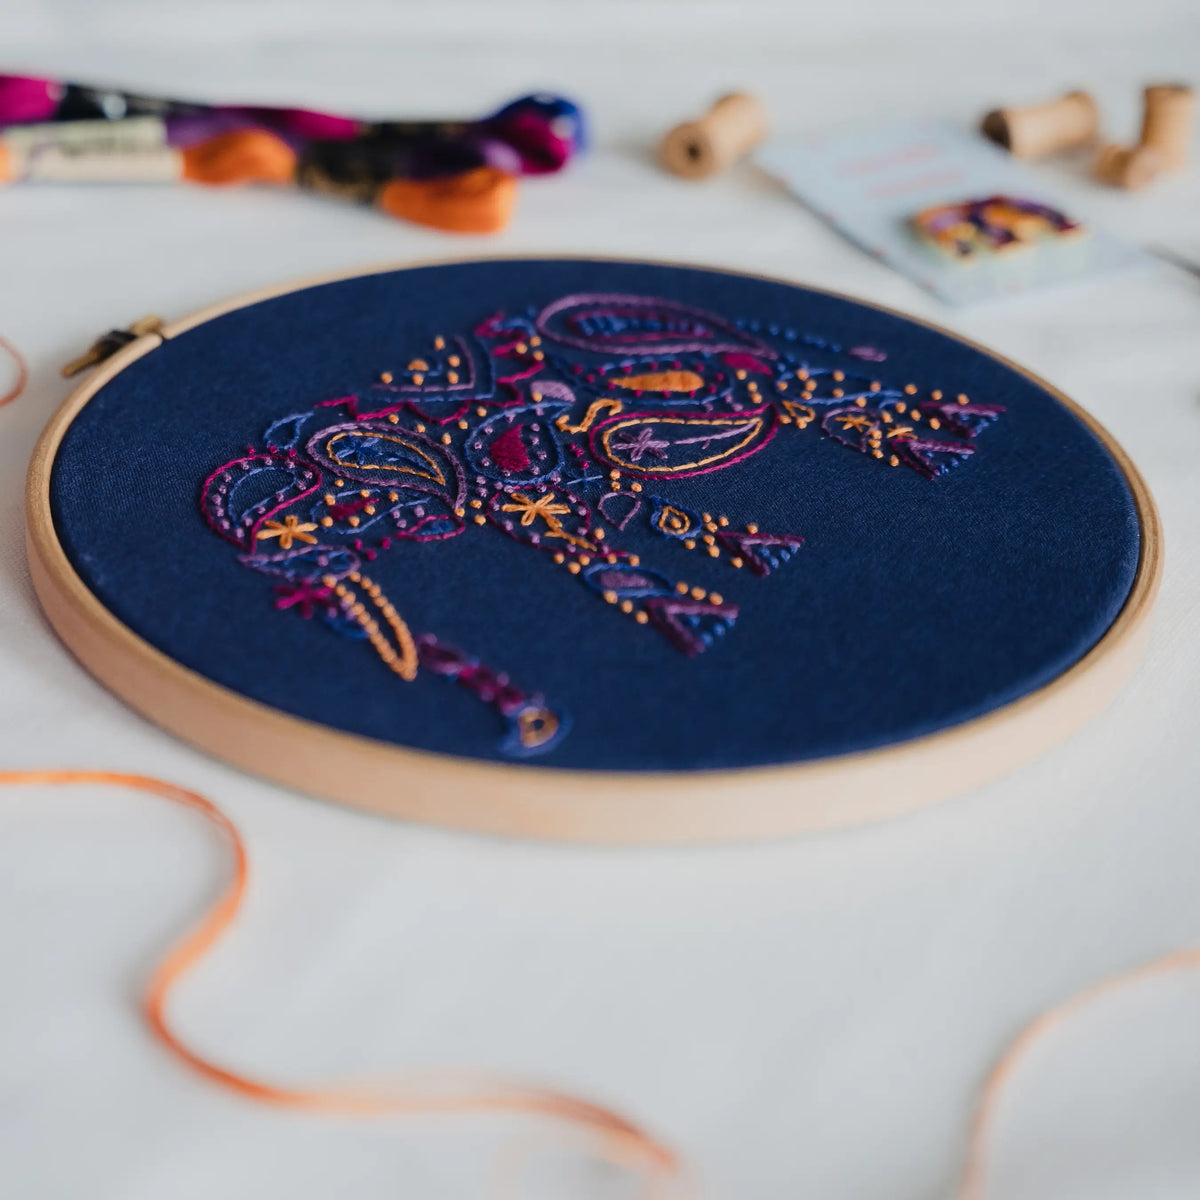 Elephant Hand Embroidery Kit